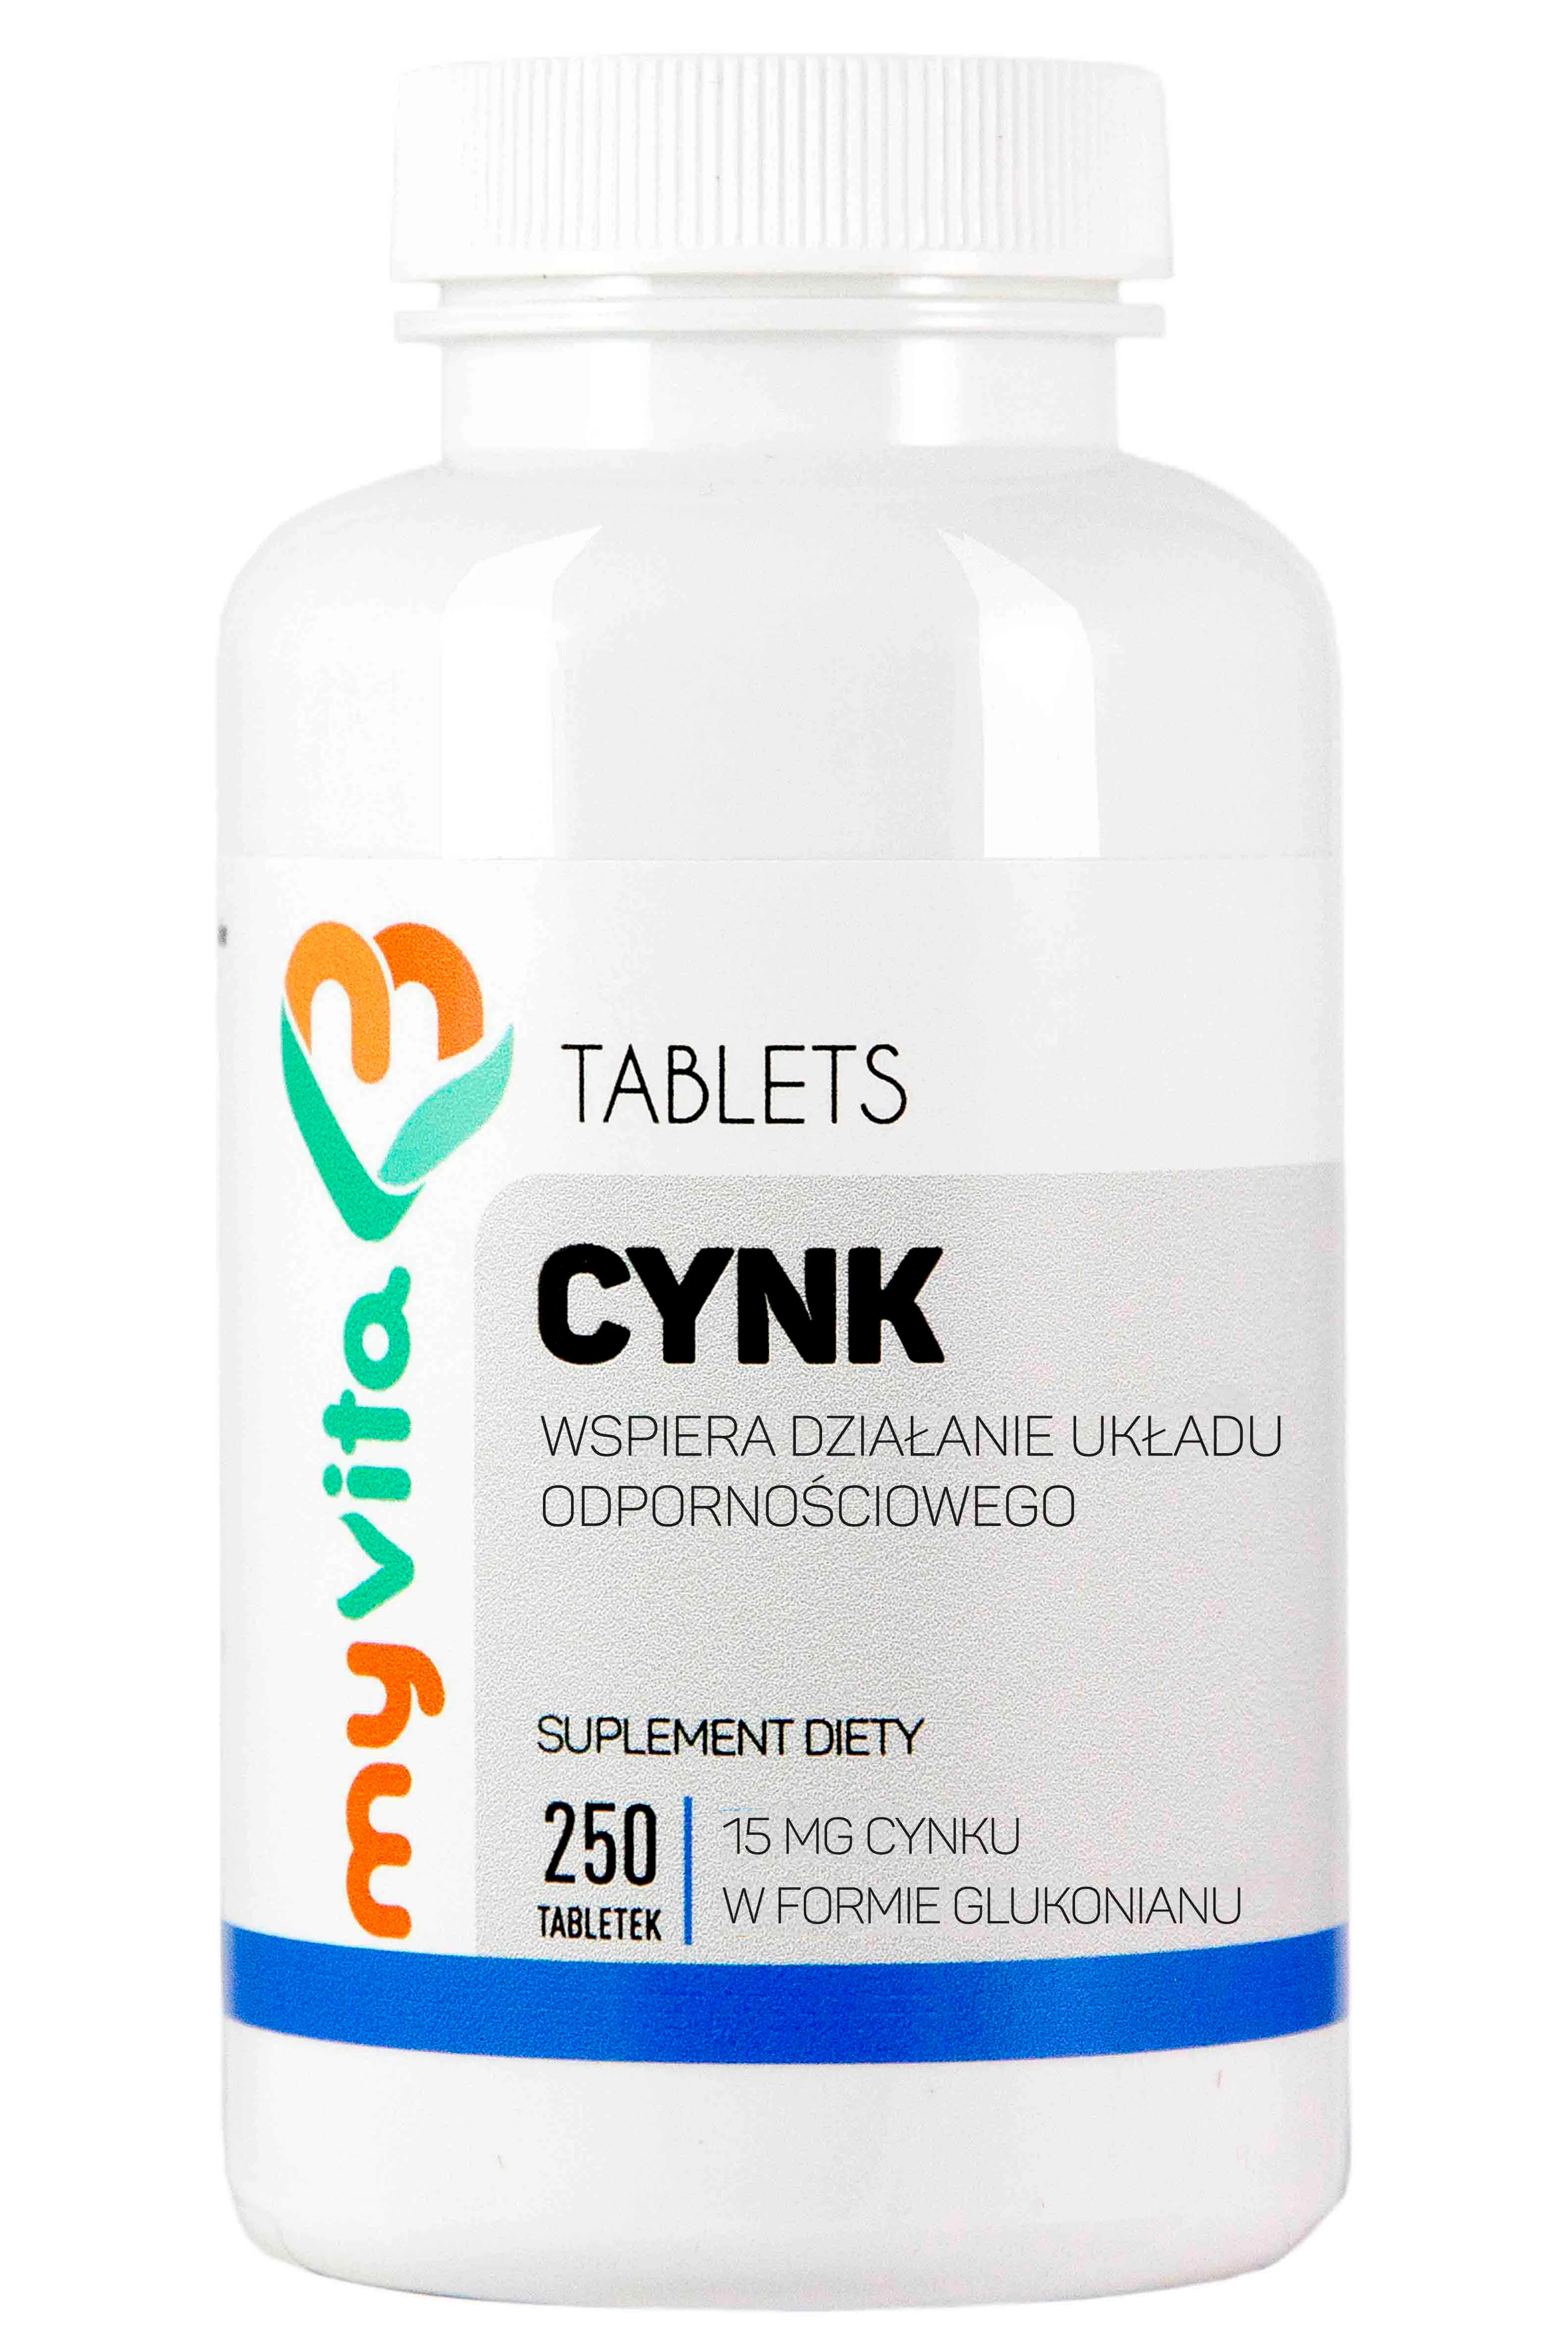 MyVita, Cynk 15mg, suplement diety, 250 tabletek